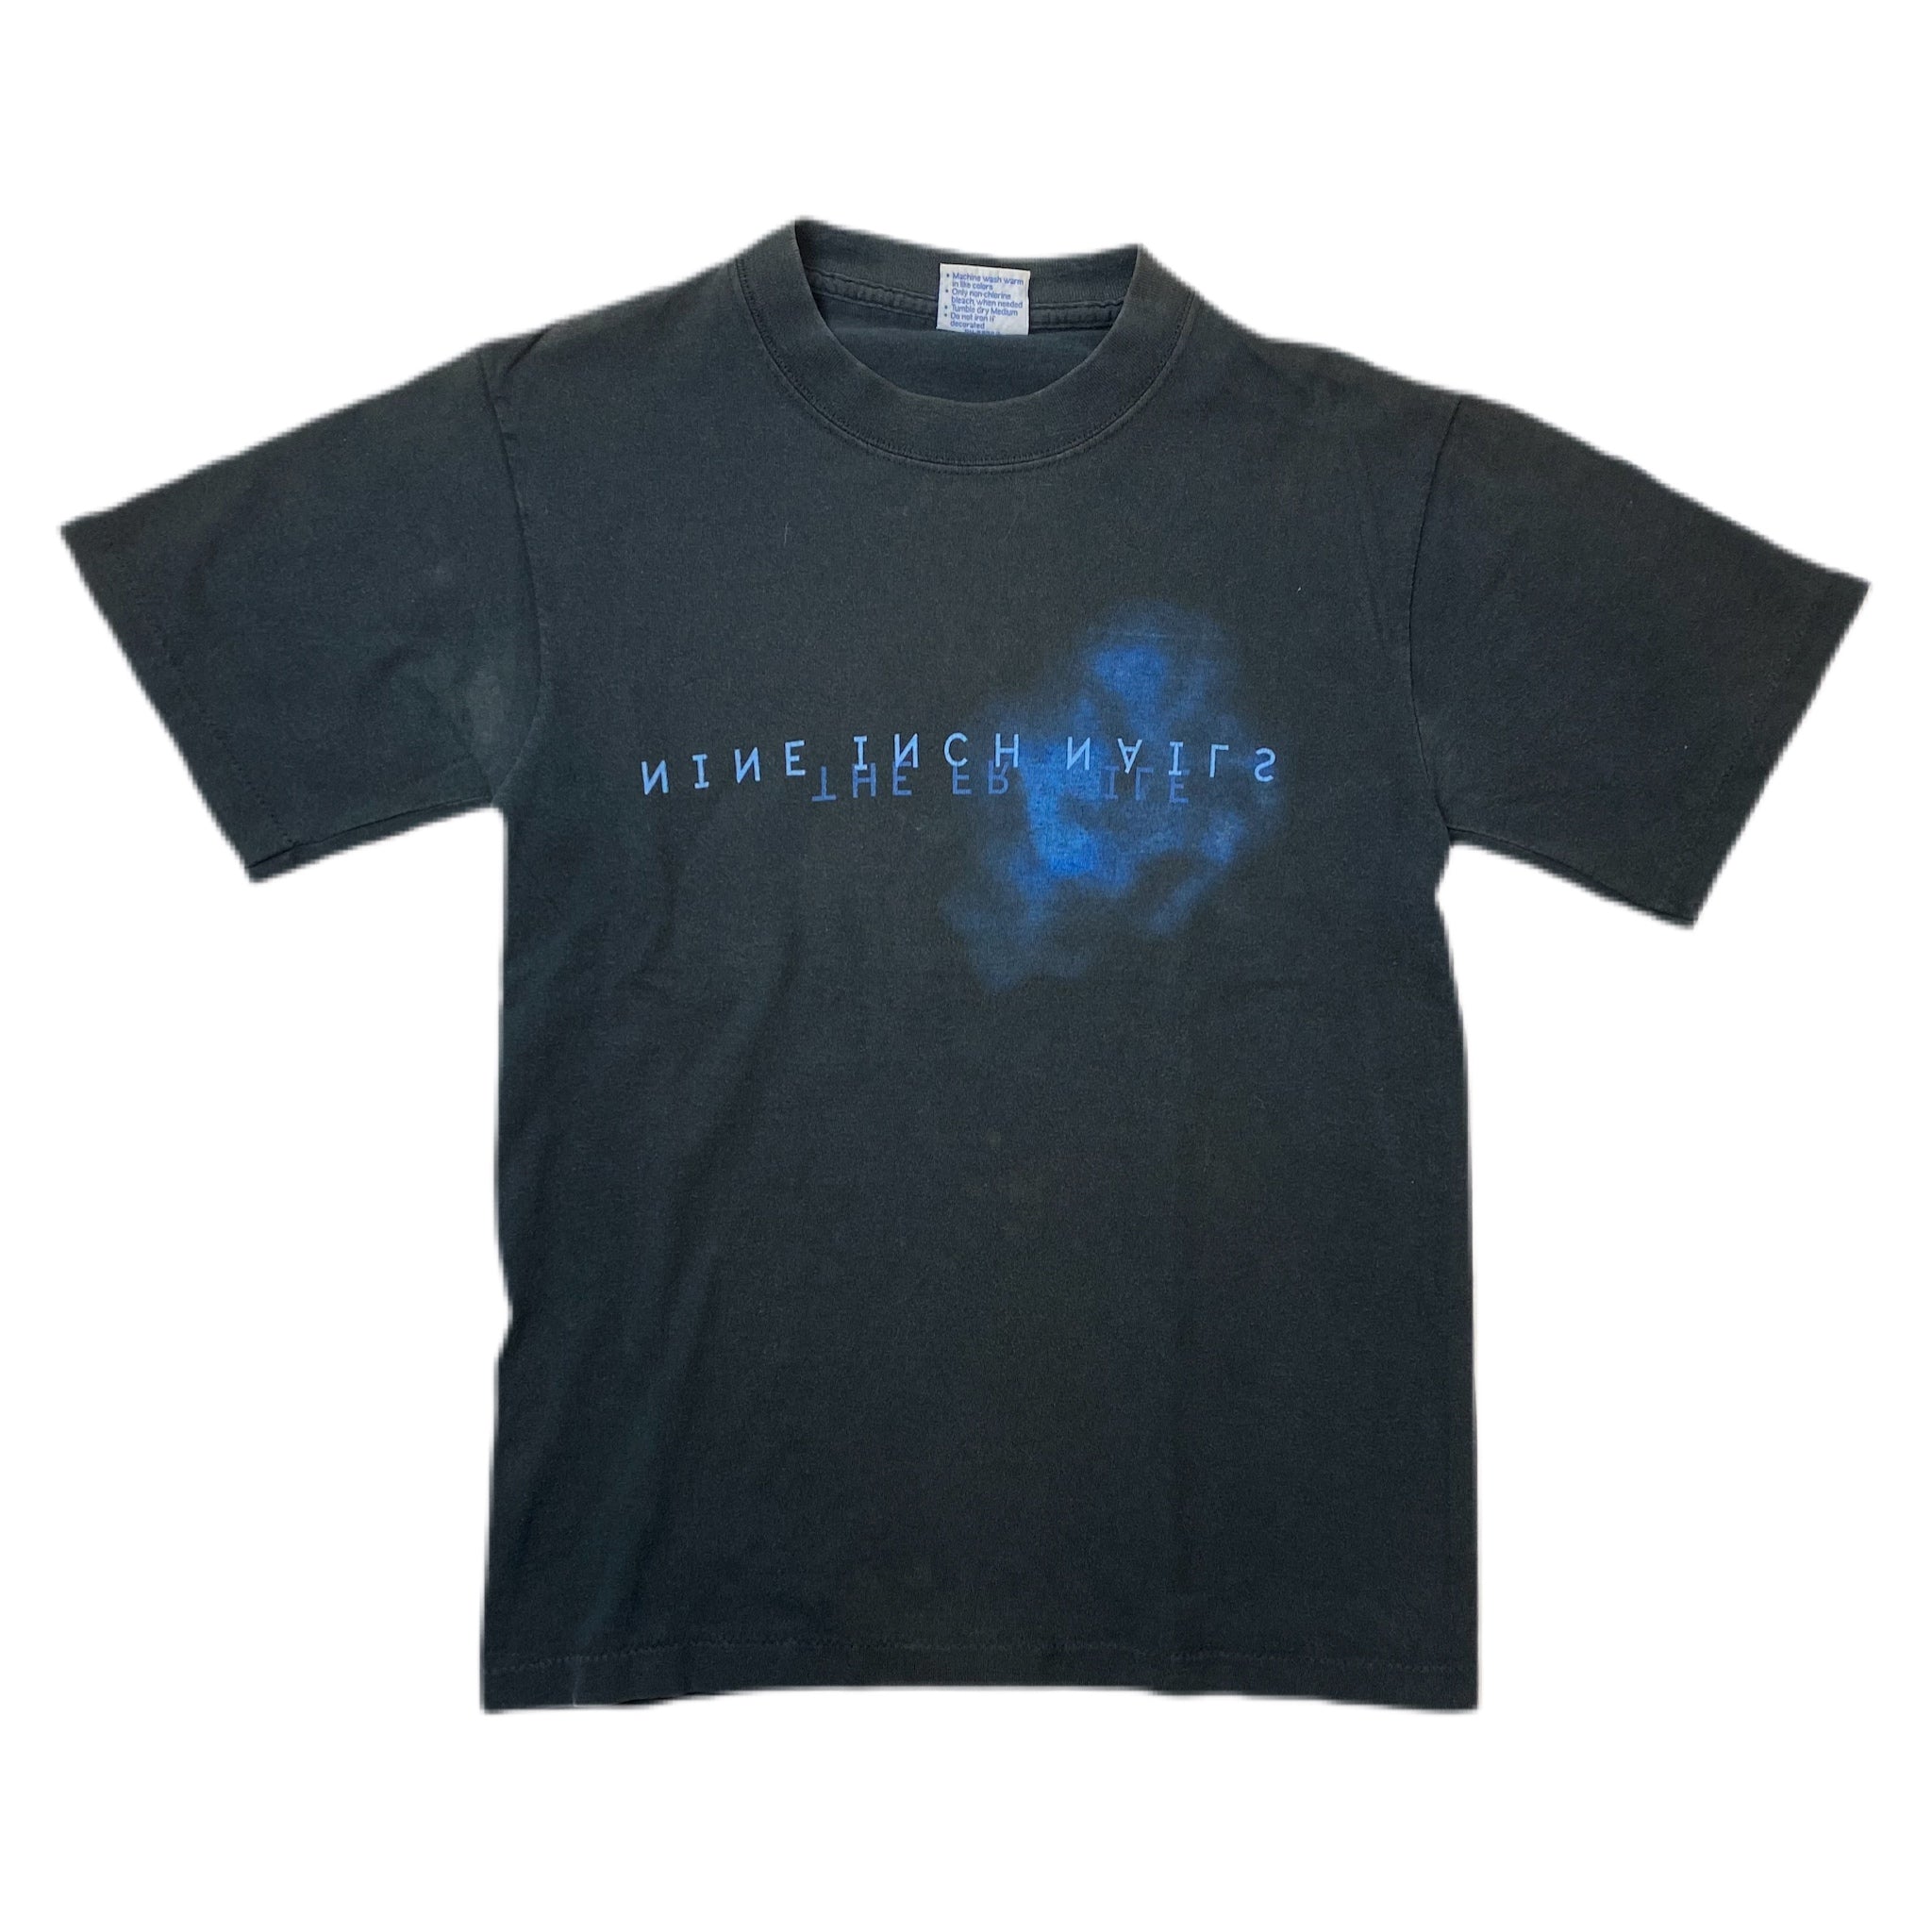 Vintage Nine Inch Nails Shirt Black - Vintage Band Shirt